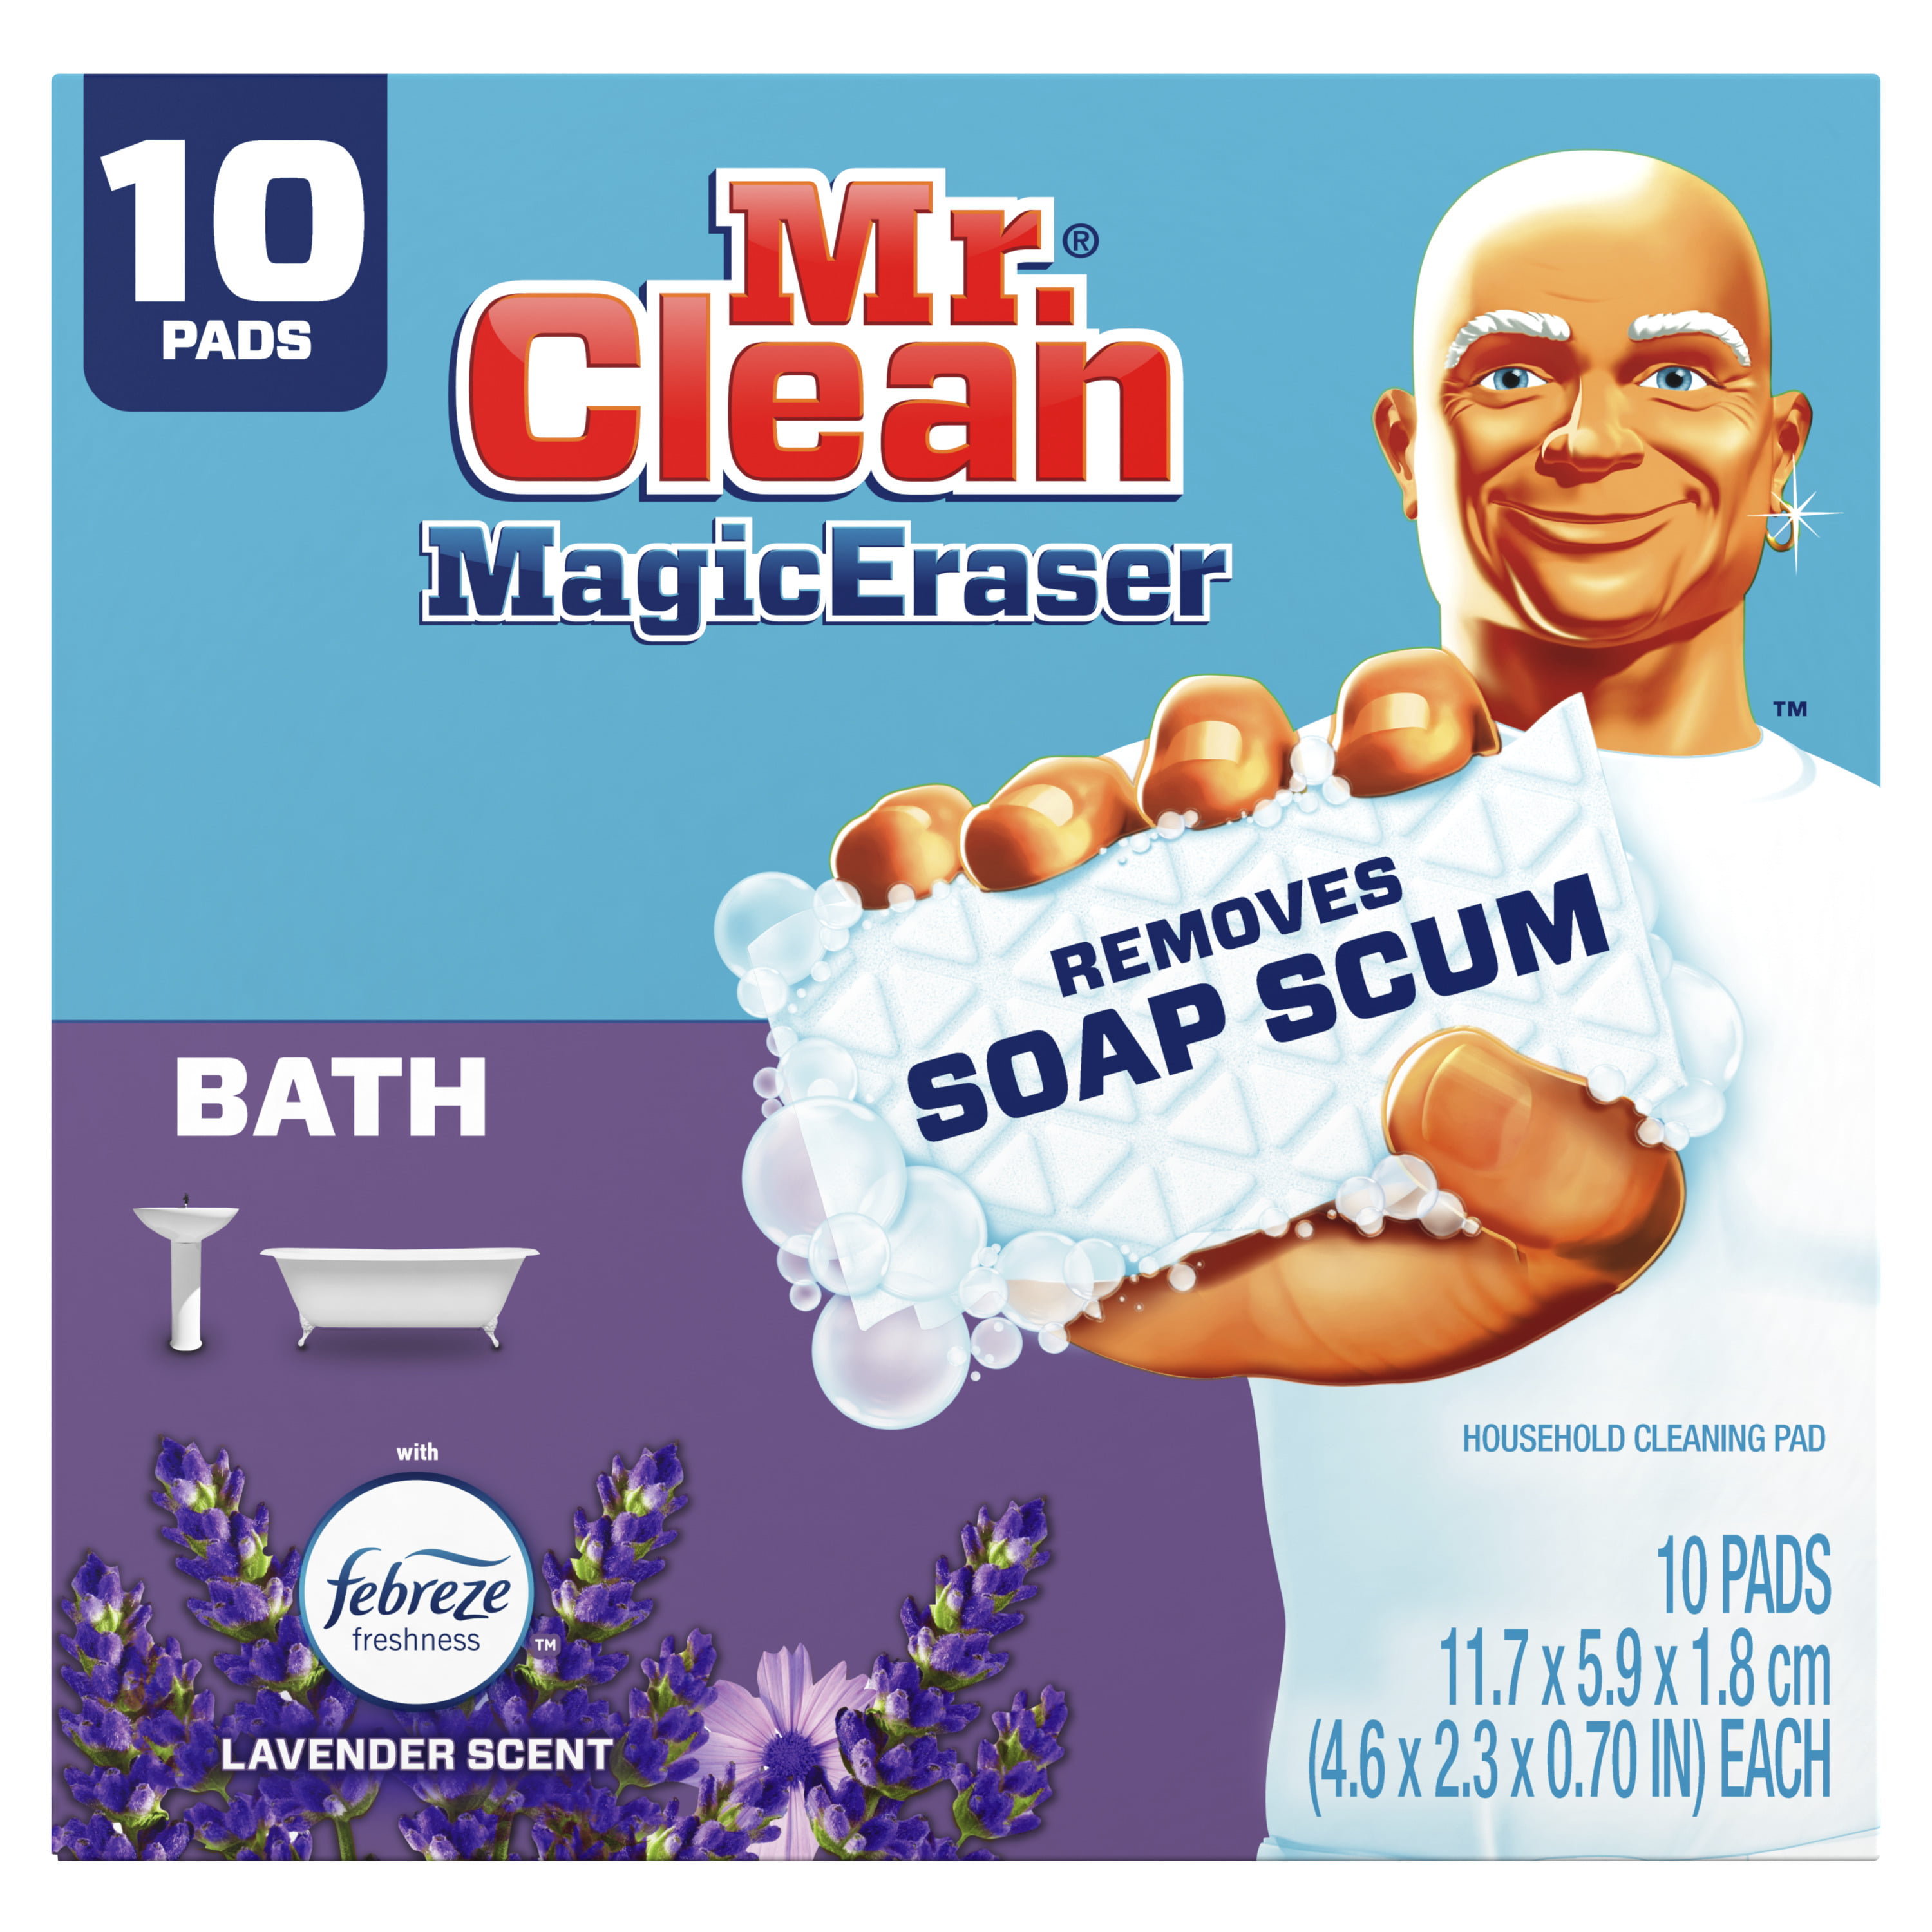 Cục lau sạch phòng tắm Mr. Clean Magic Eraser Bath with Febreze Lavender Scent là sản phẩm giúp bạn làm sạch những vết bẩn khó nhằn trên bề mặt phòng tắm một cách nhanh chóng và an toàn. Với hương thơm làm từ tinh dầu oải hương, sản phẩm này sẽ mang lại cho bạn cảm giác thư giãn sau những giờ làm việc mệt mỏi. Hãy xem ngay hình ảnh liên quan đến từ khóa này để cảm nhận sản phẩm này.